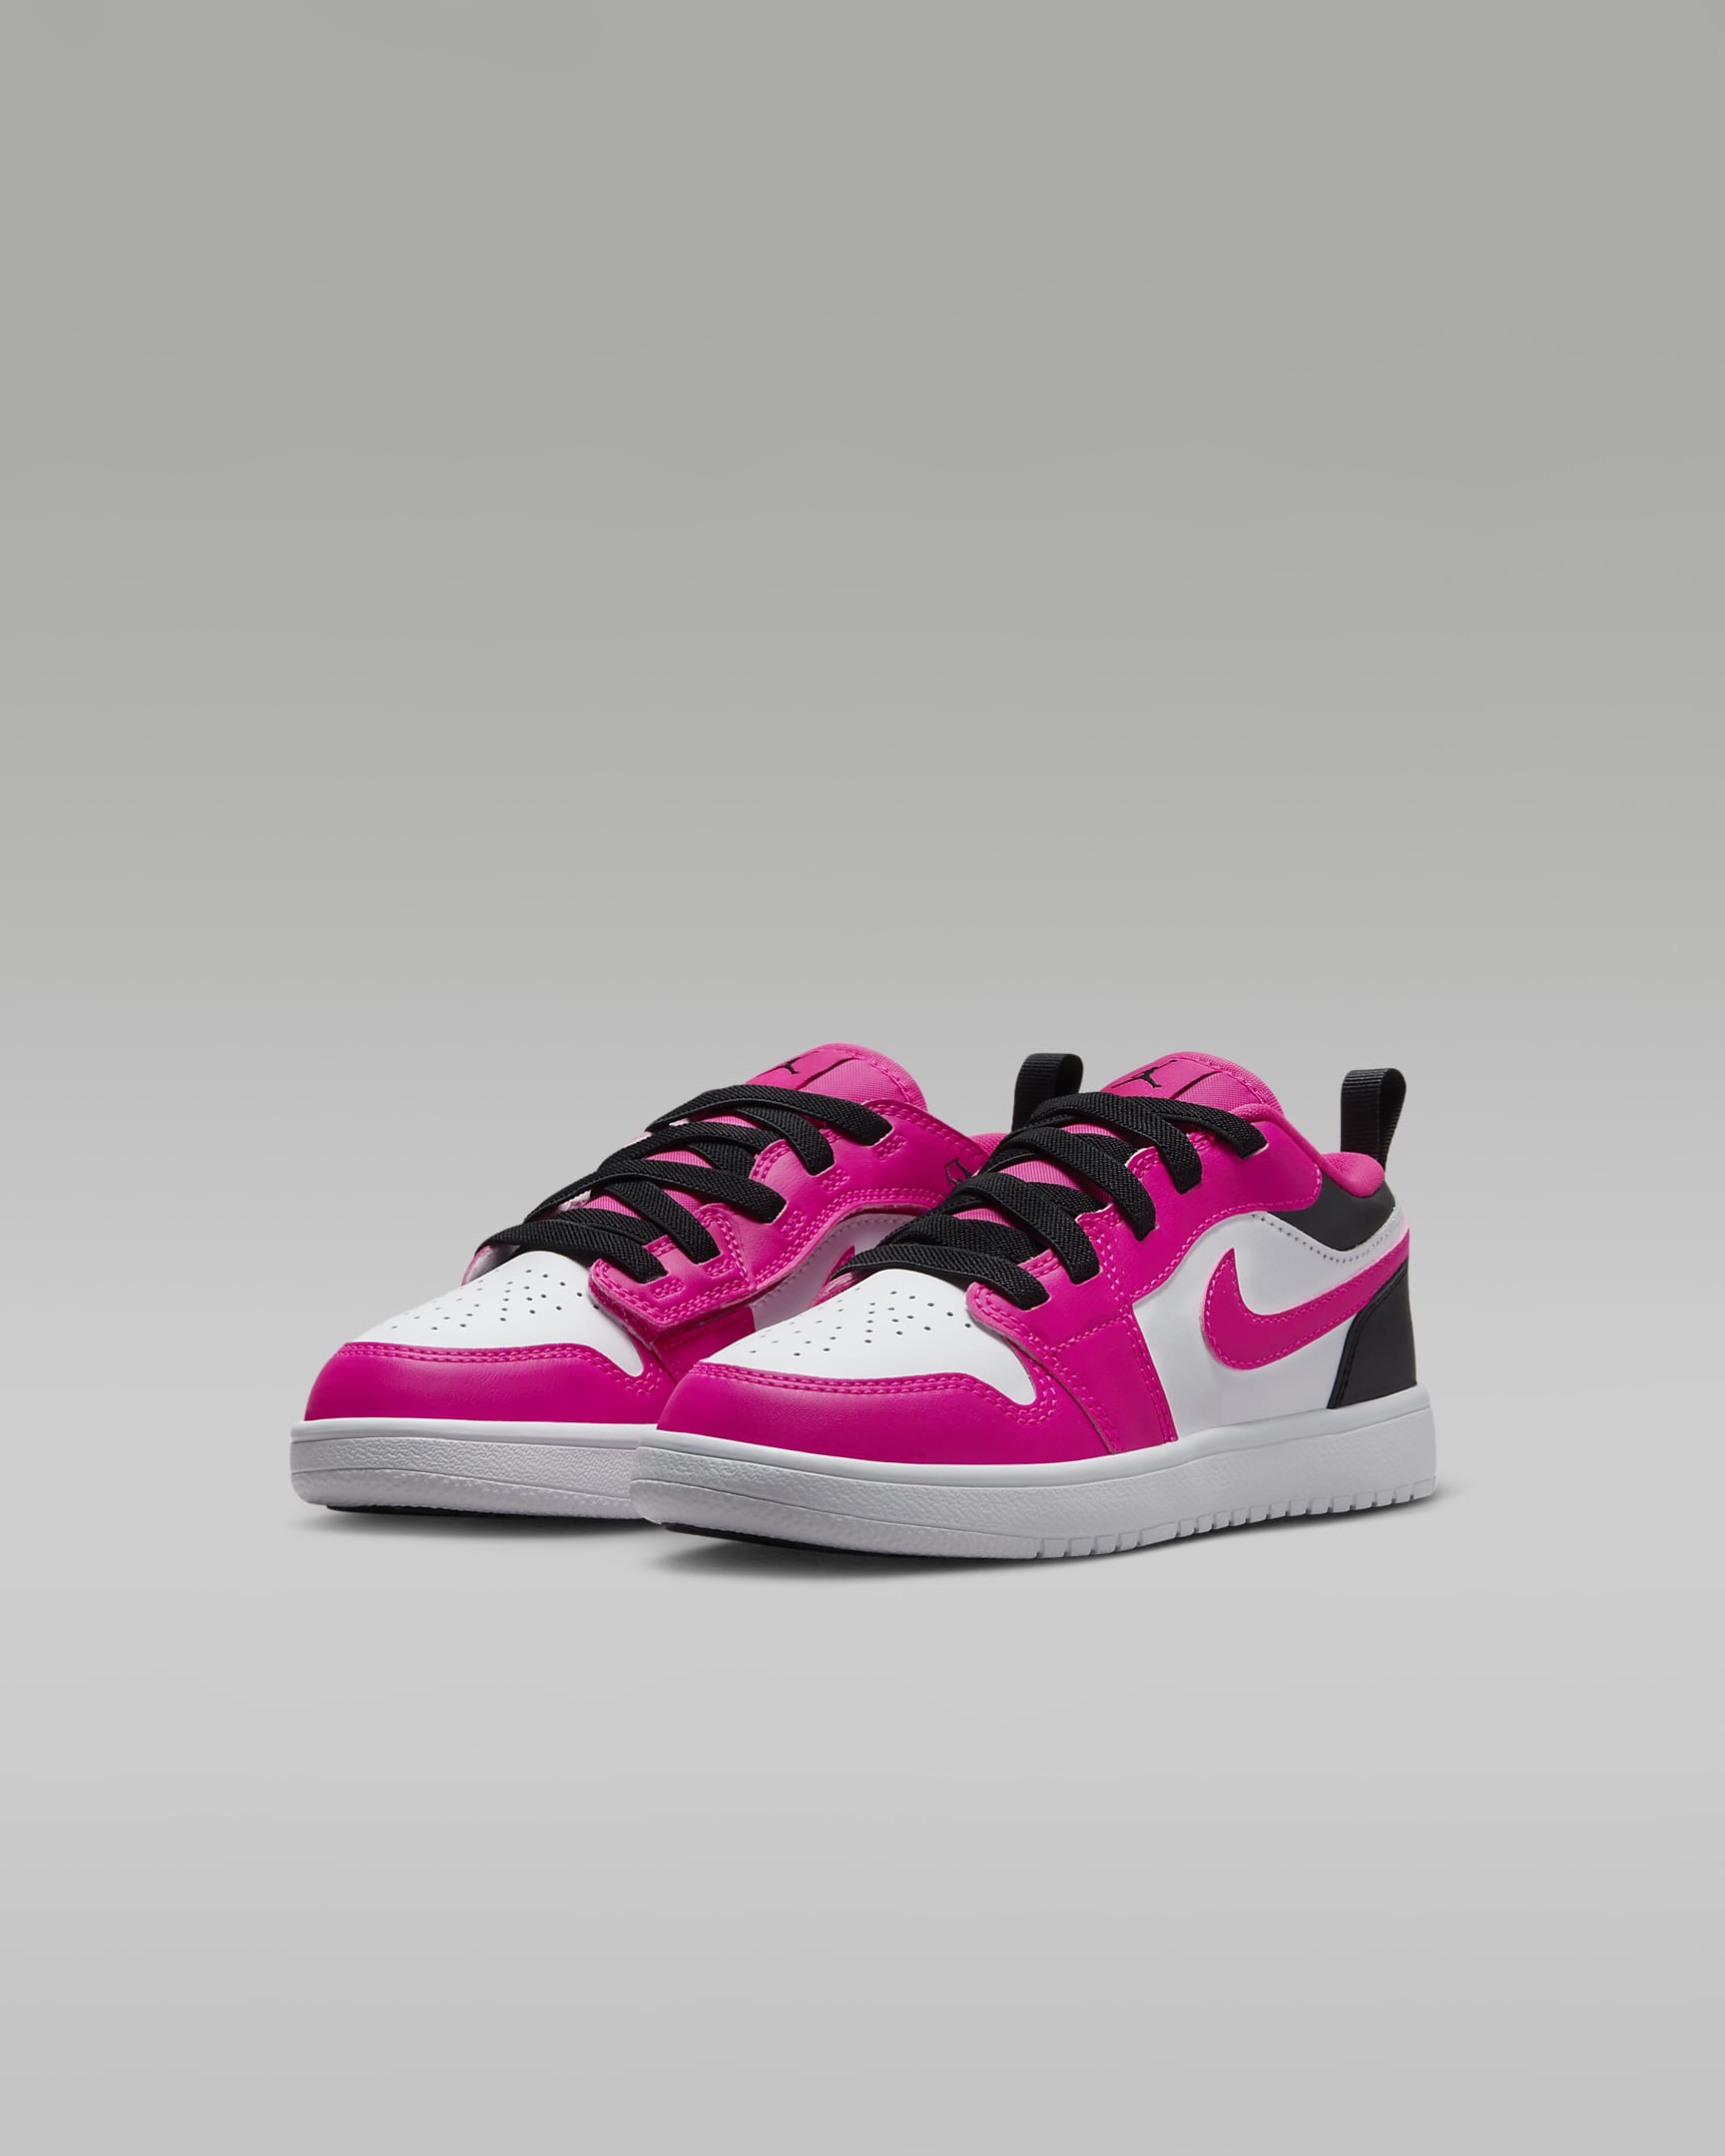 Chaussure Jordan 1 Low Alt pour enfant - Blanc/Noir/Fierce Pink